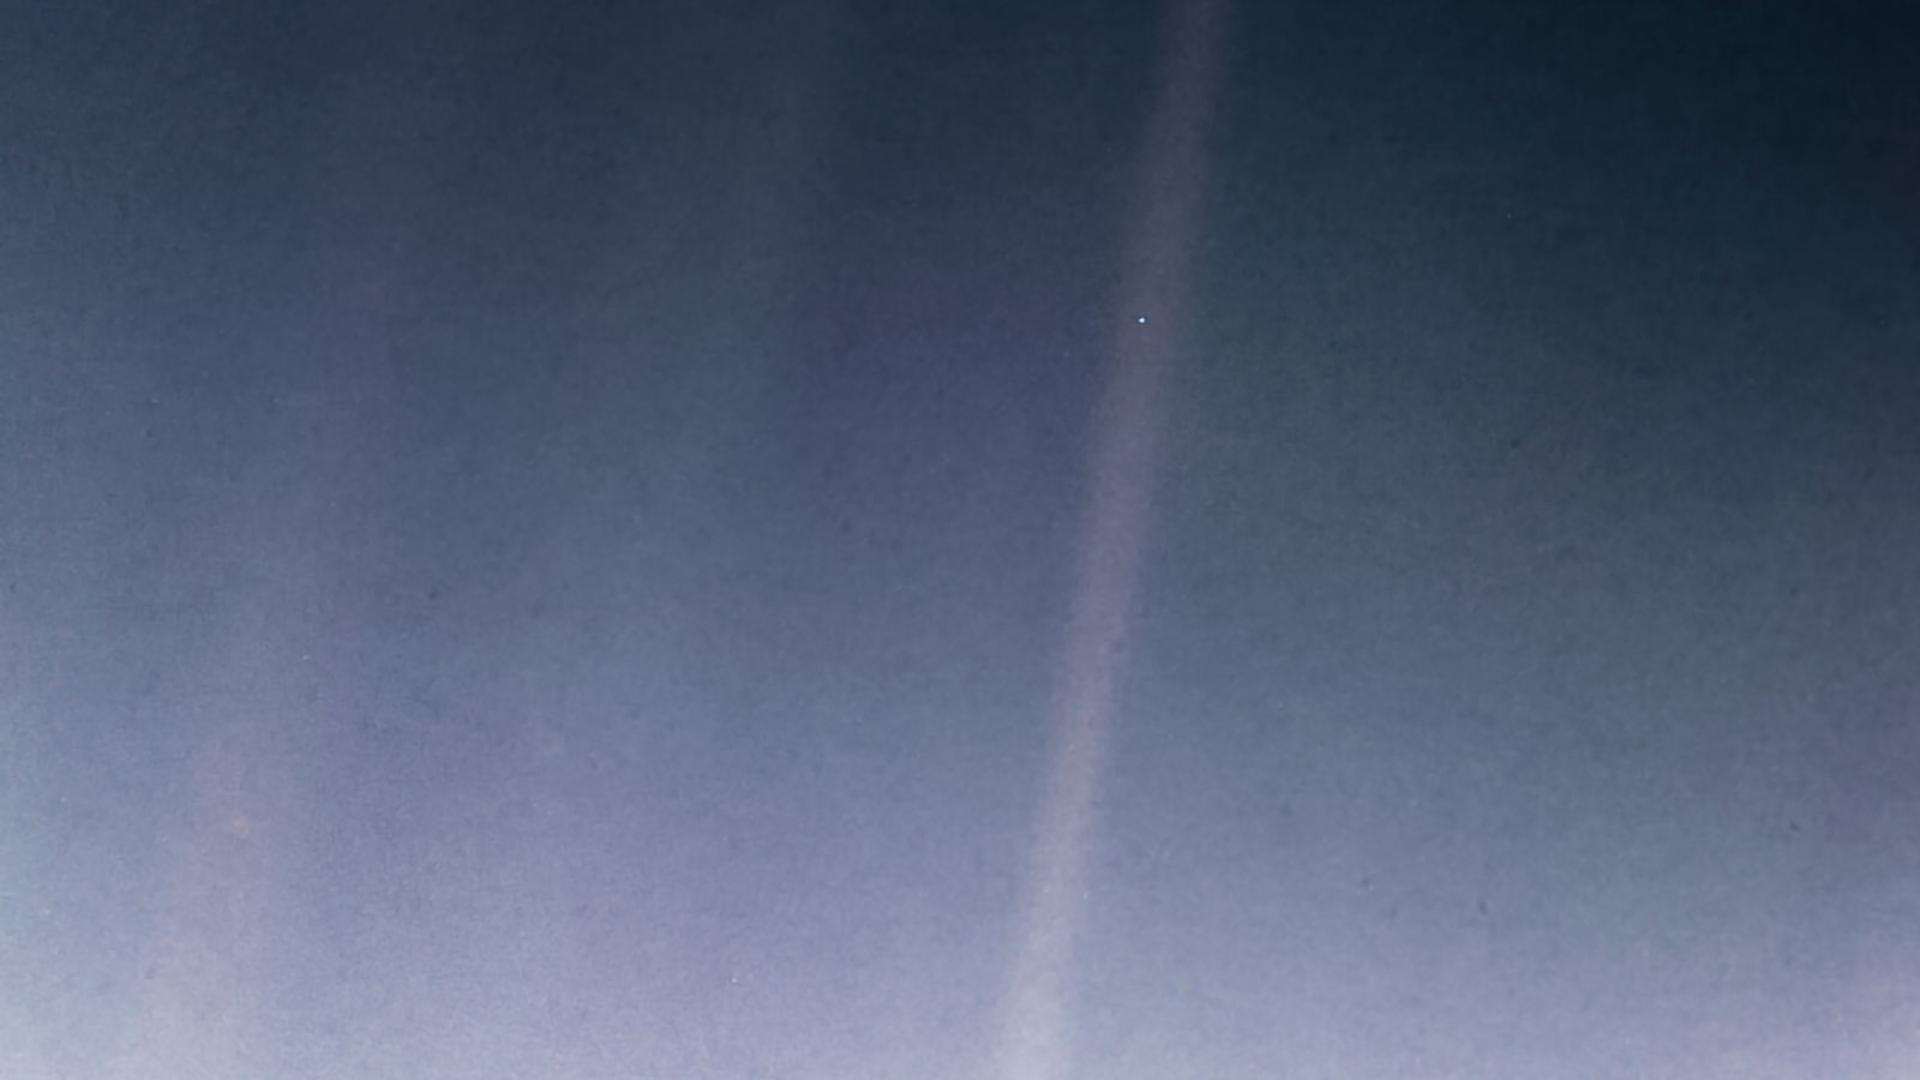 عکس معروف «نقطه آبی کمرنگ» از سیاره زمین که توسط وویجر ۱ ثبت شد.